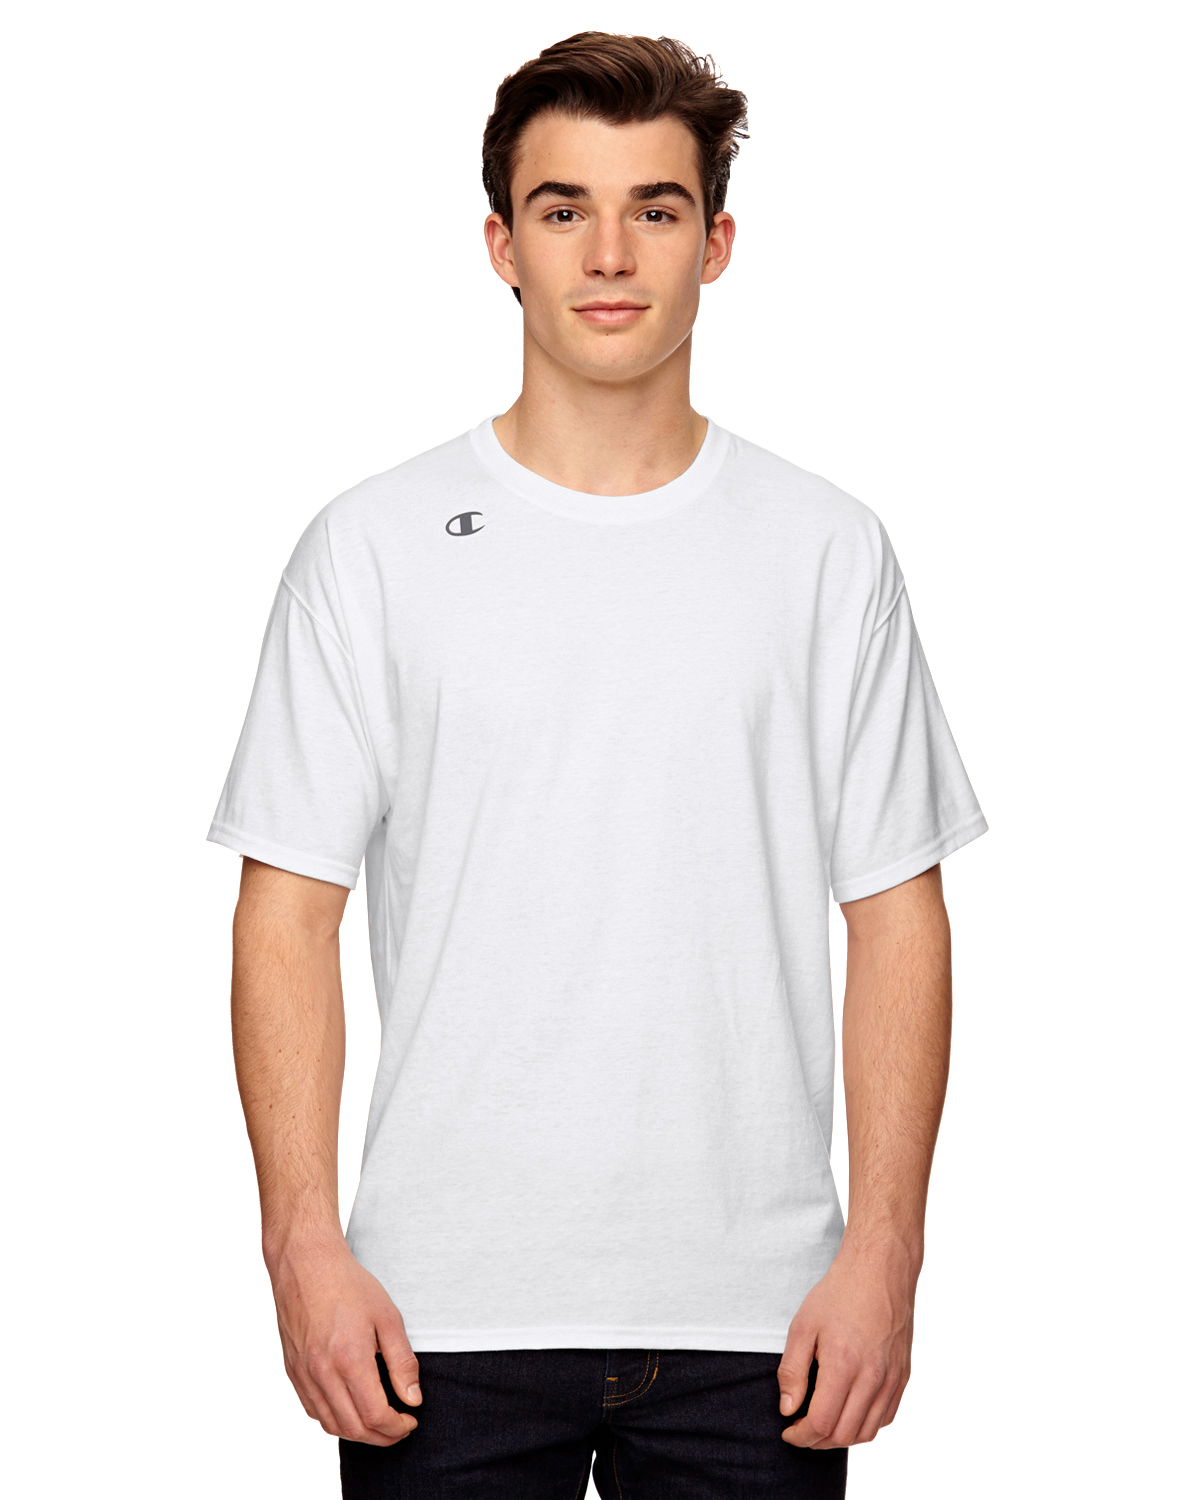 Vapor Cotton Short-Sleeve T-Shirt $4.94 